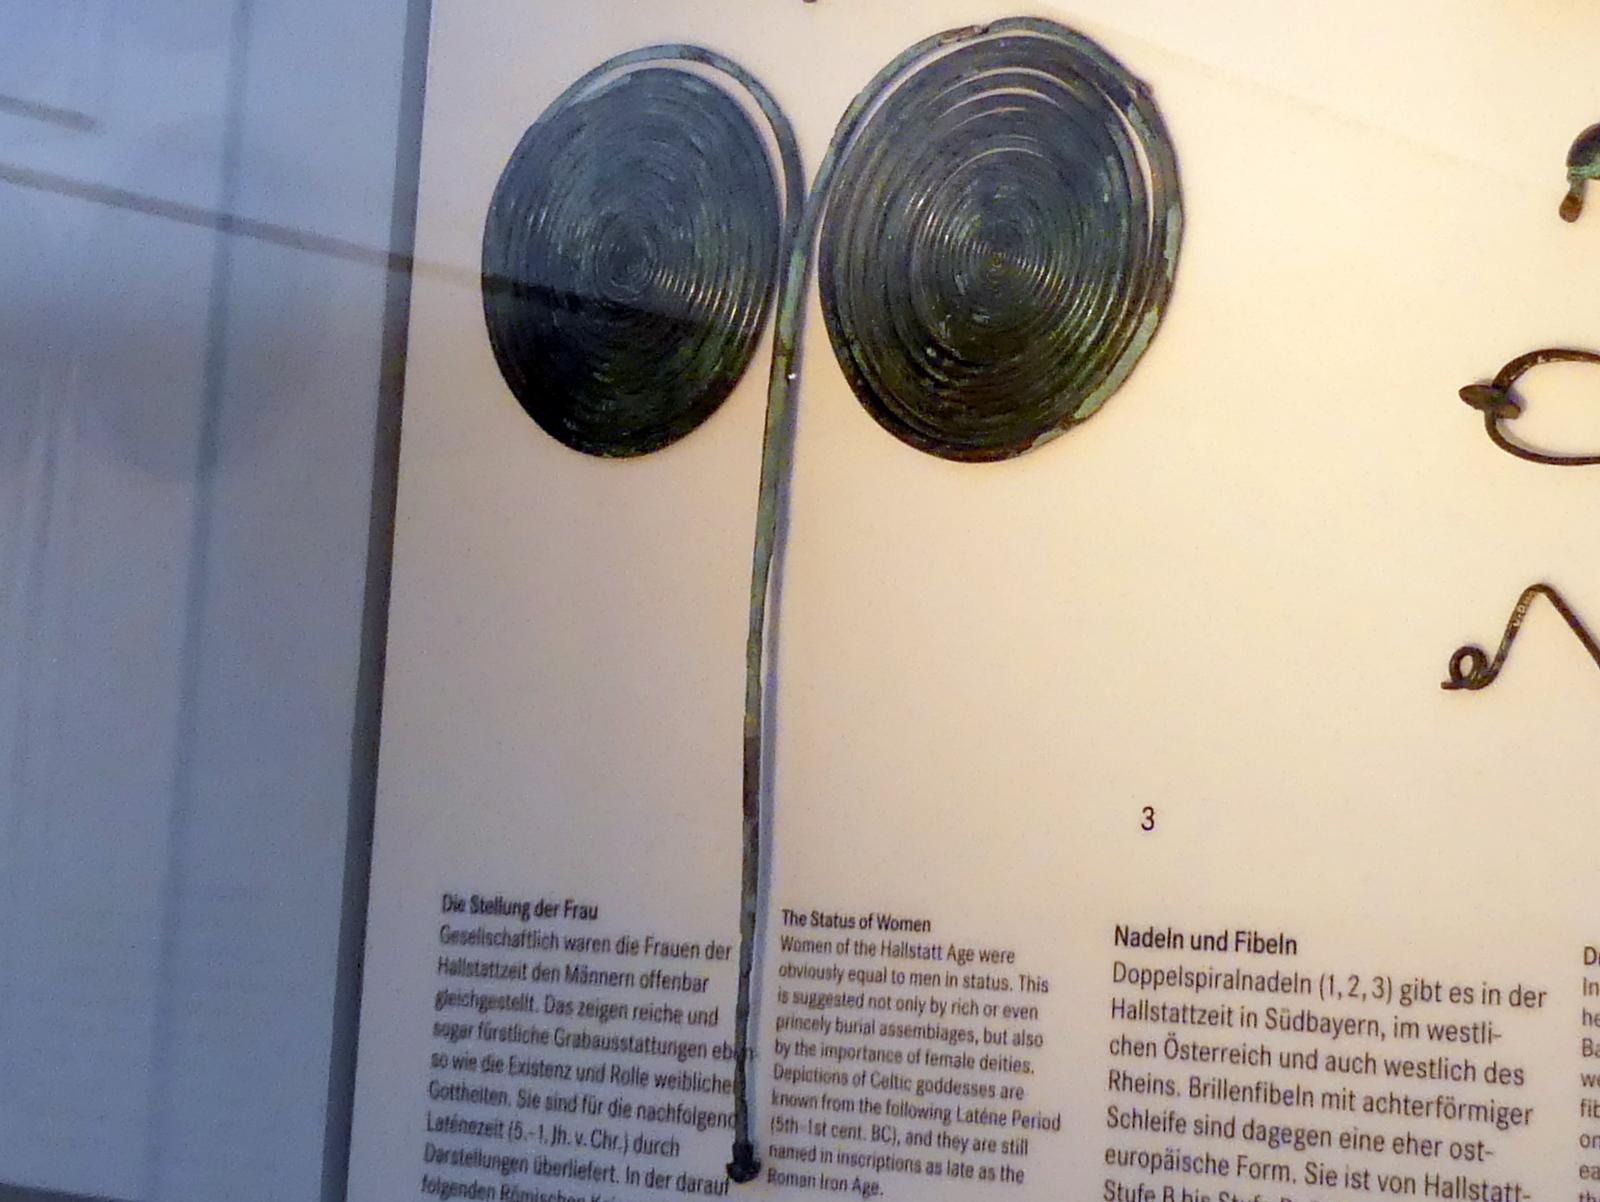 Doppelspiralnadel, Hallstattzeit, 700 - 200 v. Chr.